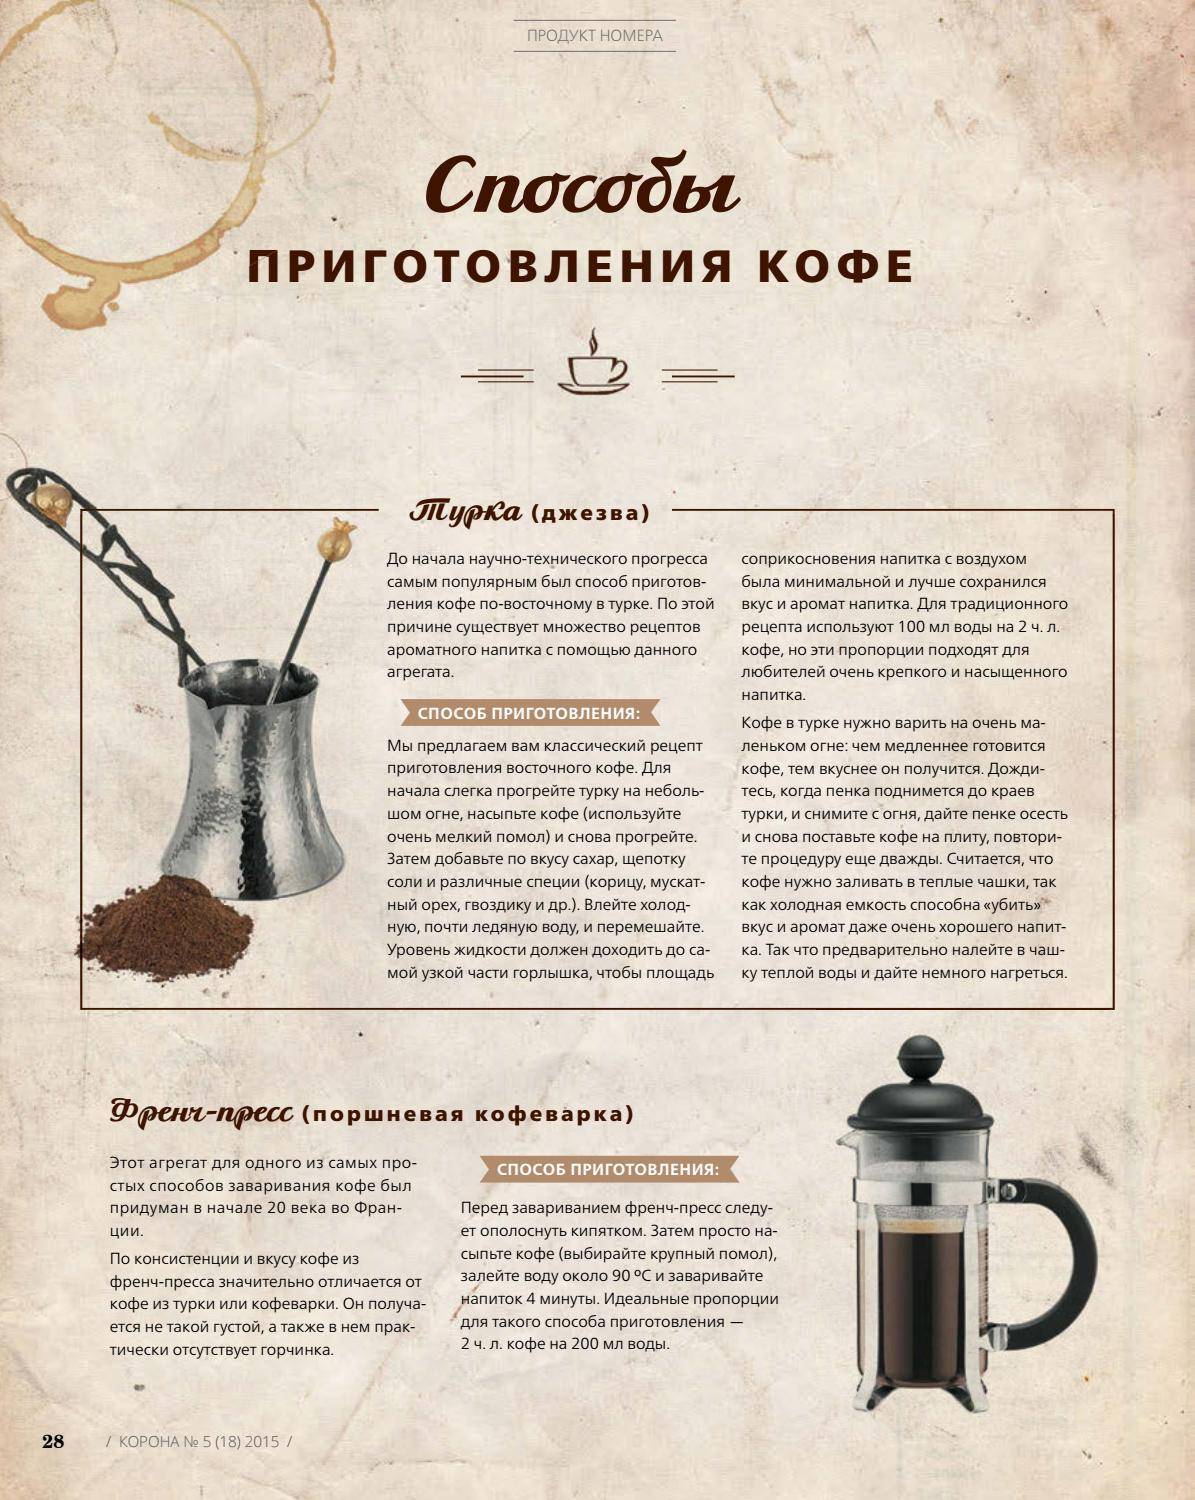 Как правильно варить кофе в турке: секреты кофеманов